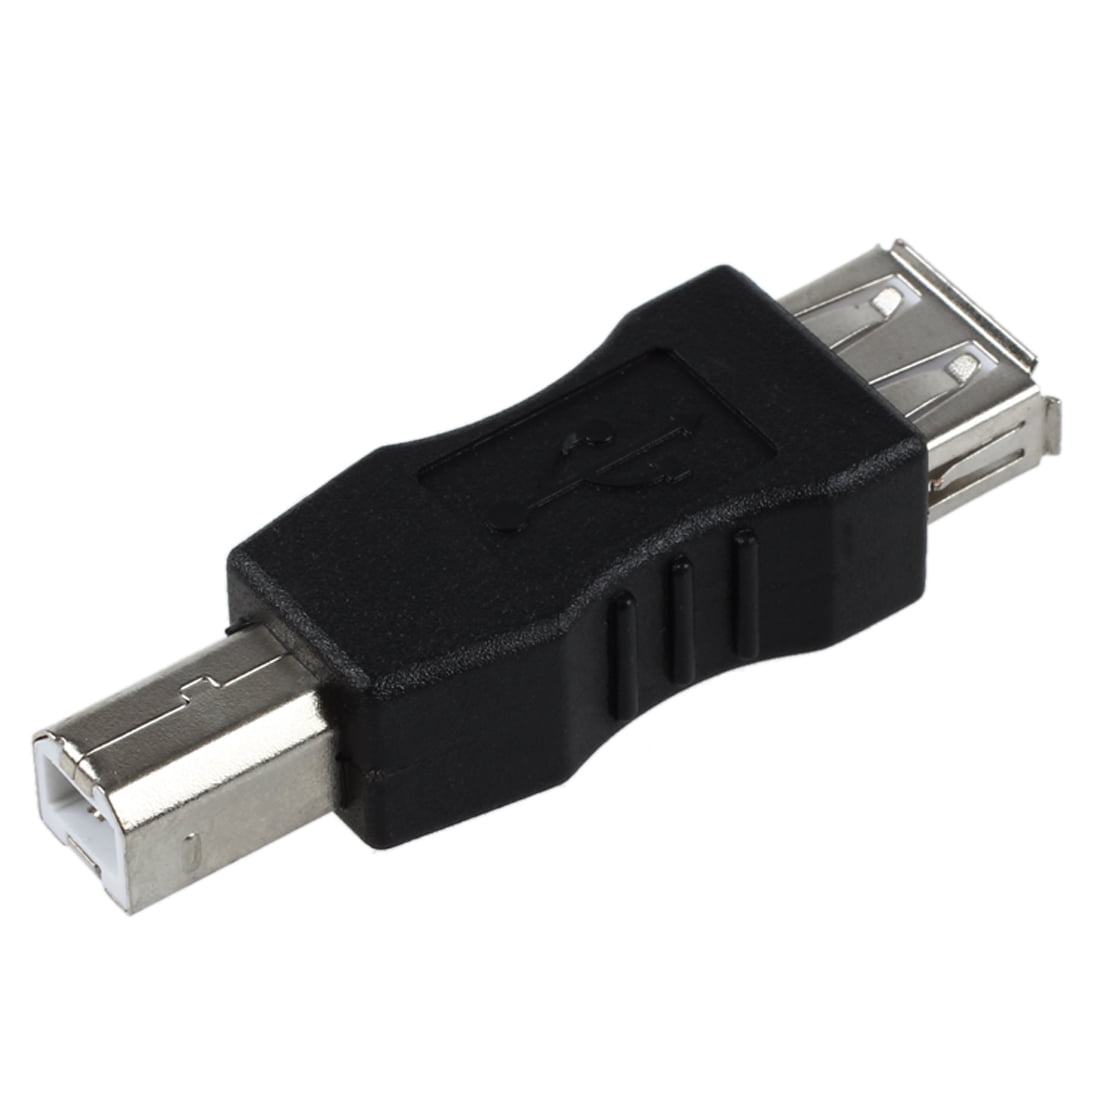 USB Type A USB B Male Adapter - Walmart.com